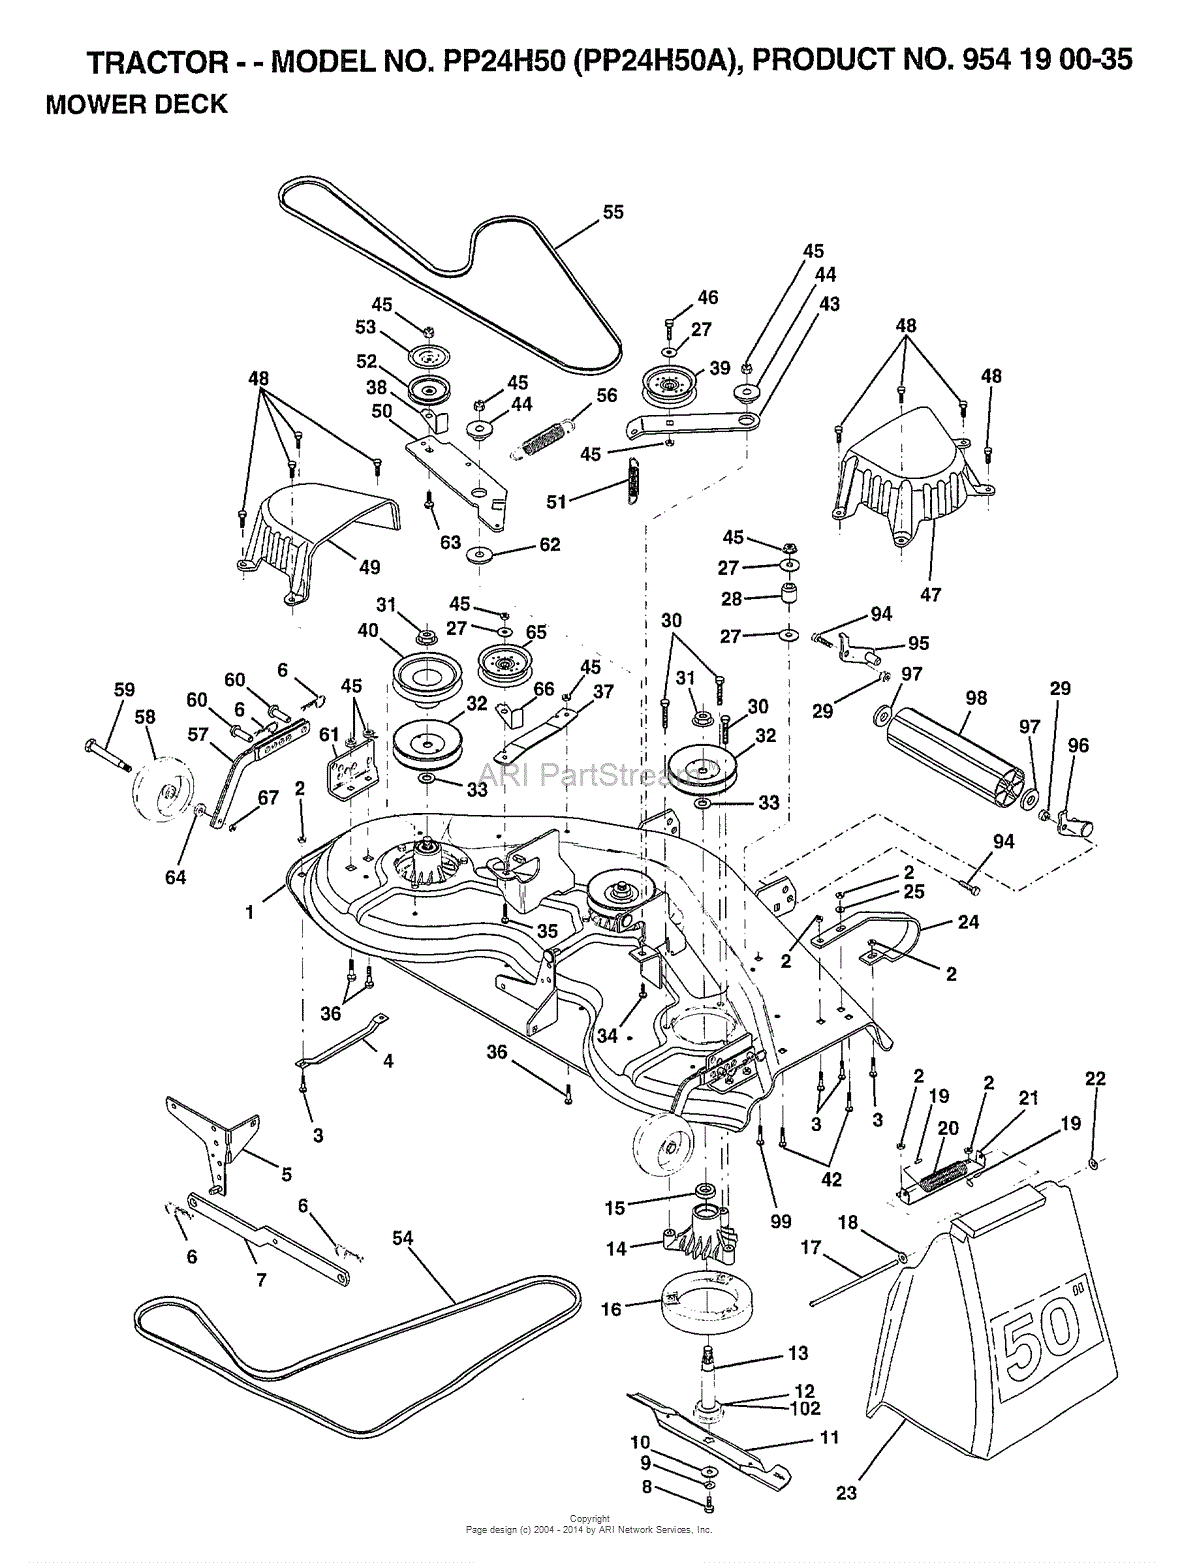 32 Craftsman 50 Inch Mower Deck Belt Diagram Wiring Diagram List